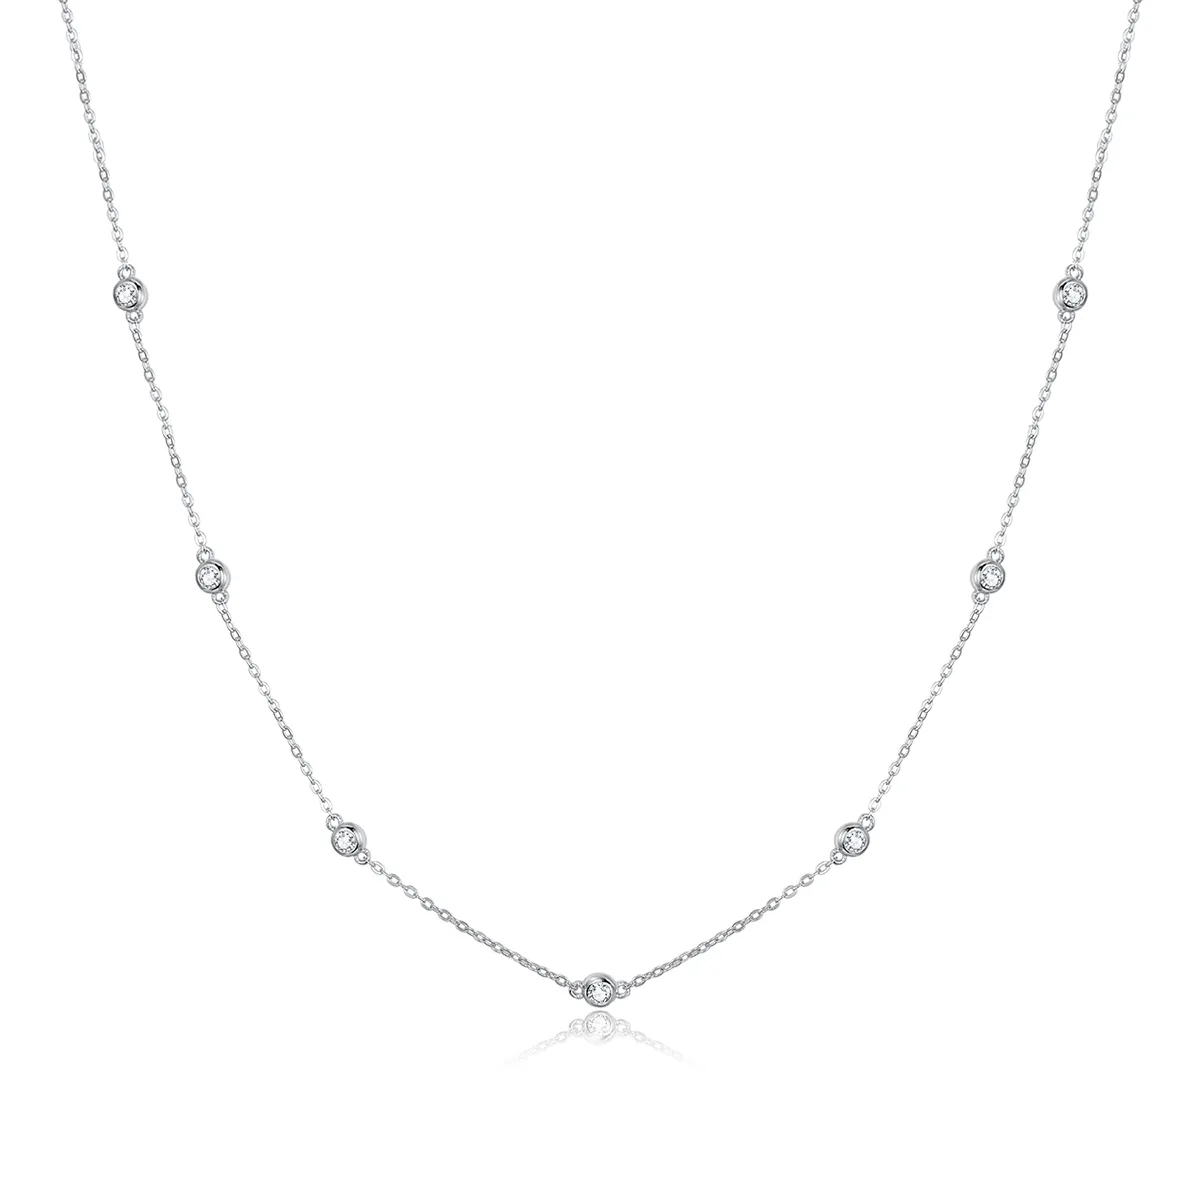 Pandora Style Silver Romantic Shine Chain Necklace - SCN393